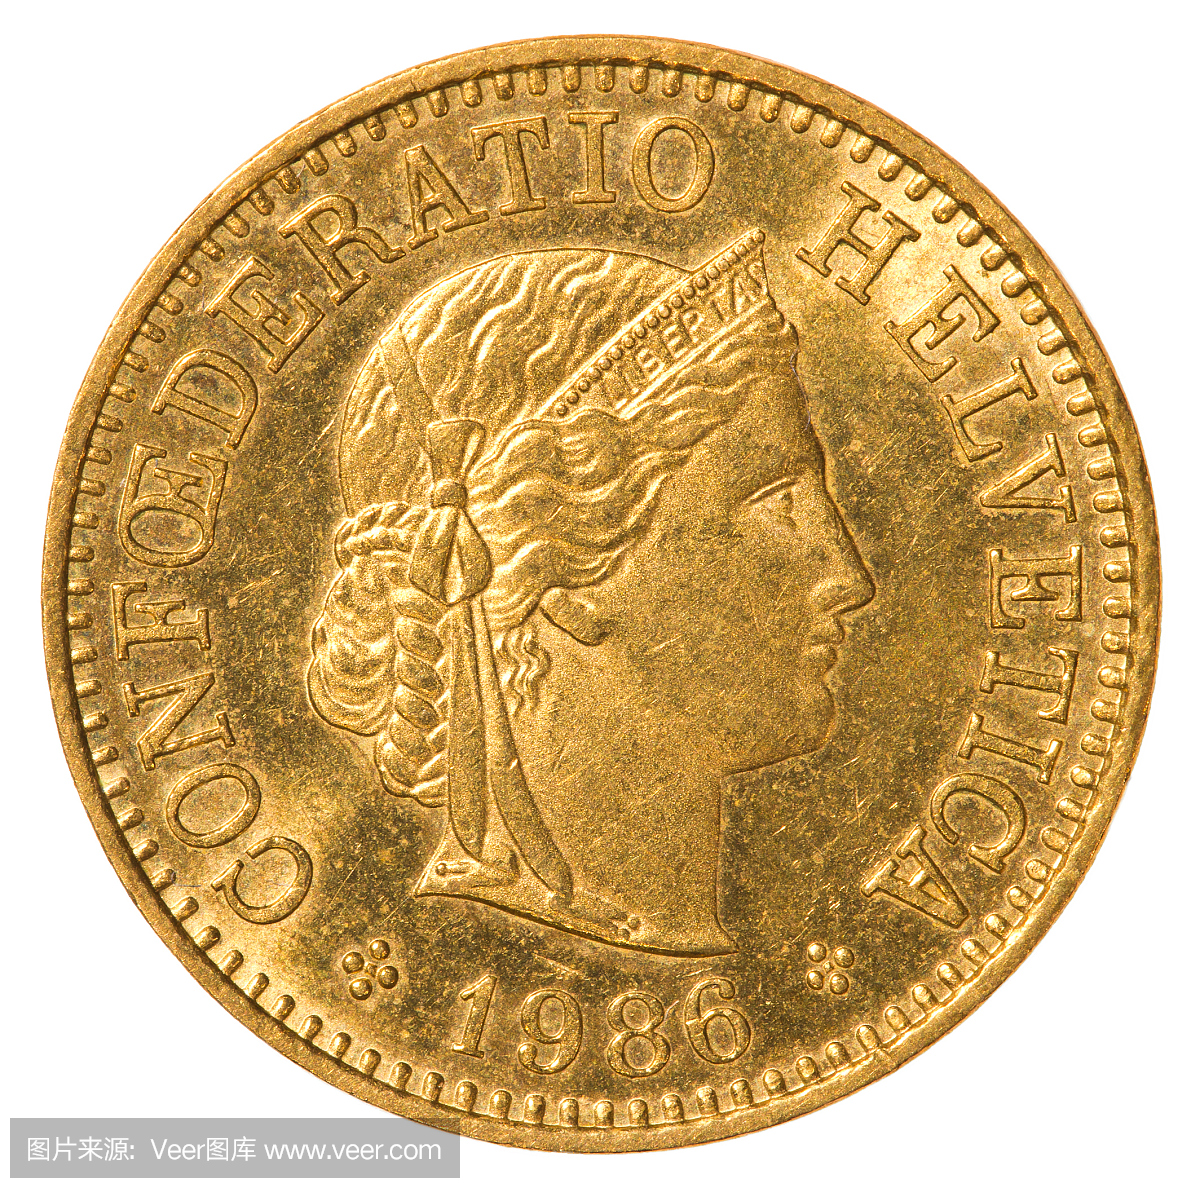 瑞士法郎硬币,瑞士钢崩,瑞士硬币,法郎符号